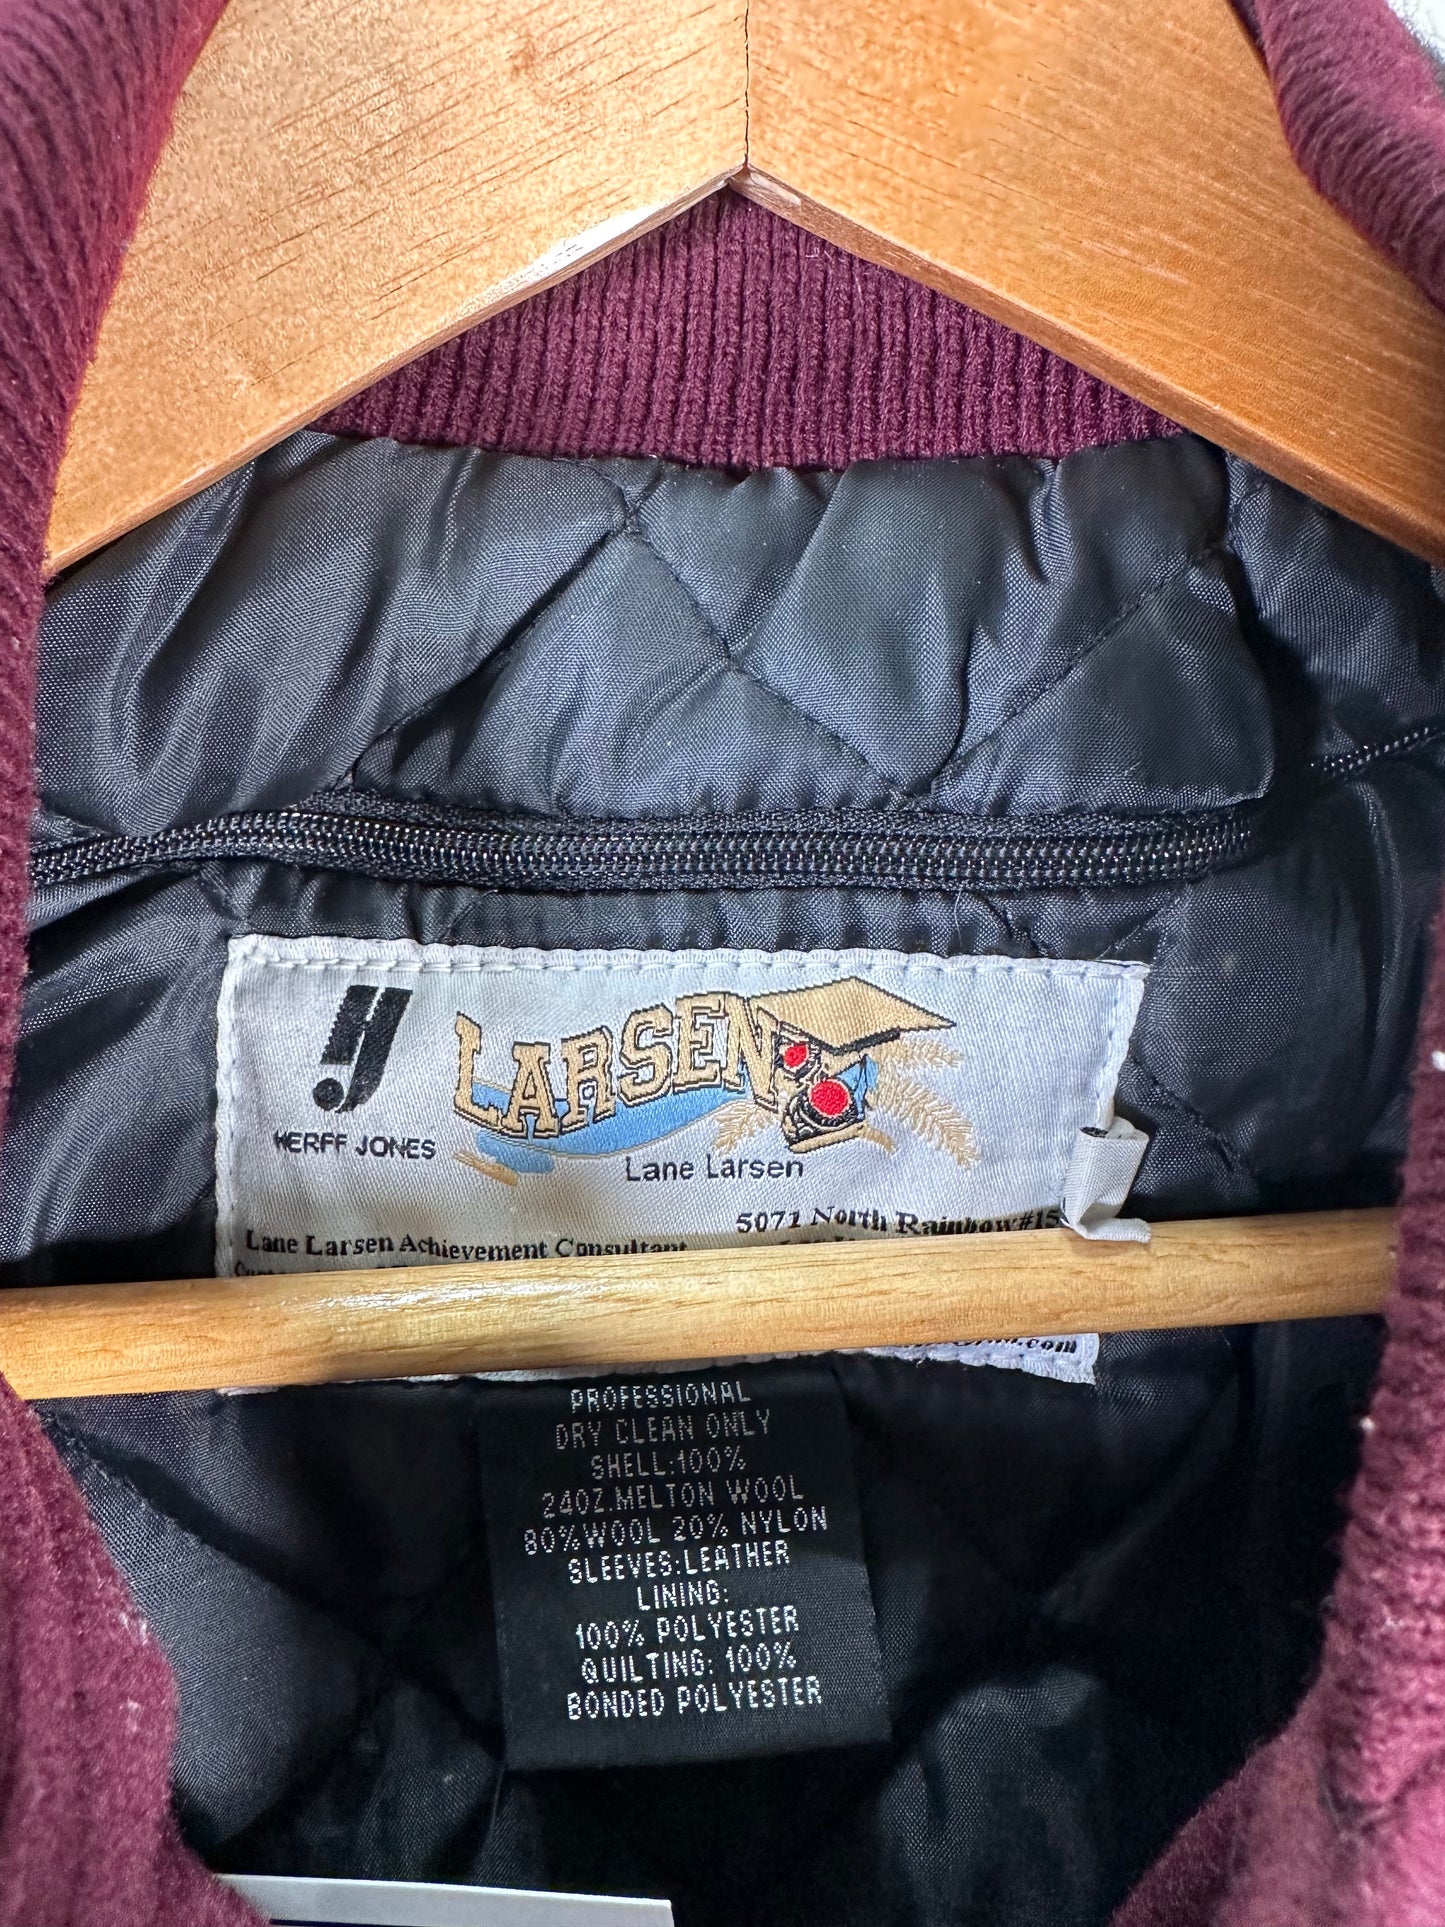 Arizona State Sundevils Varsity Jacket (Large)